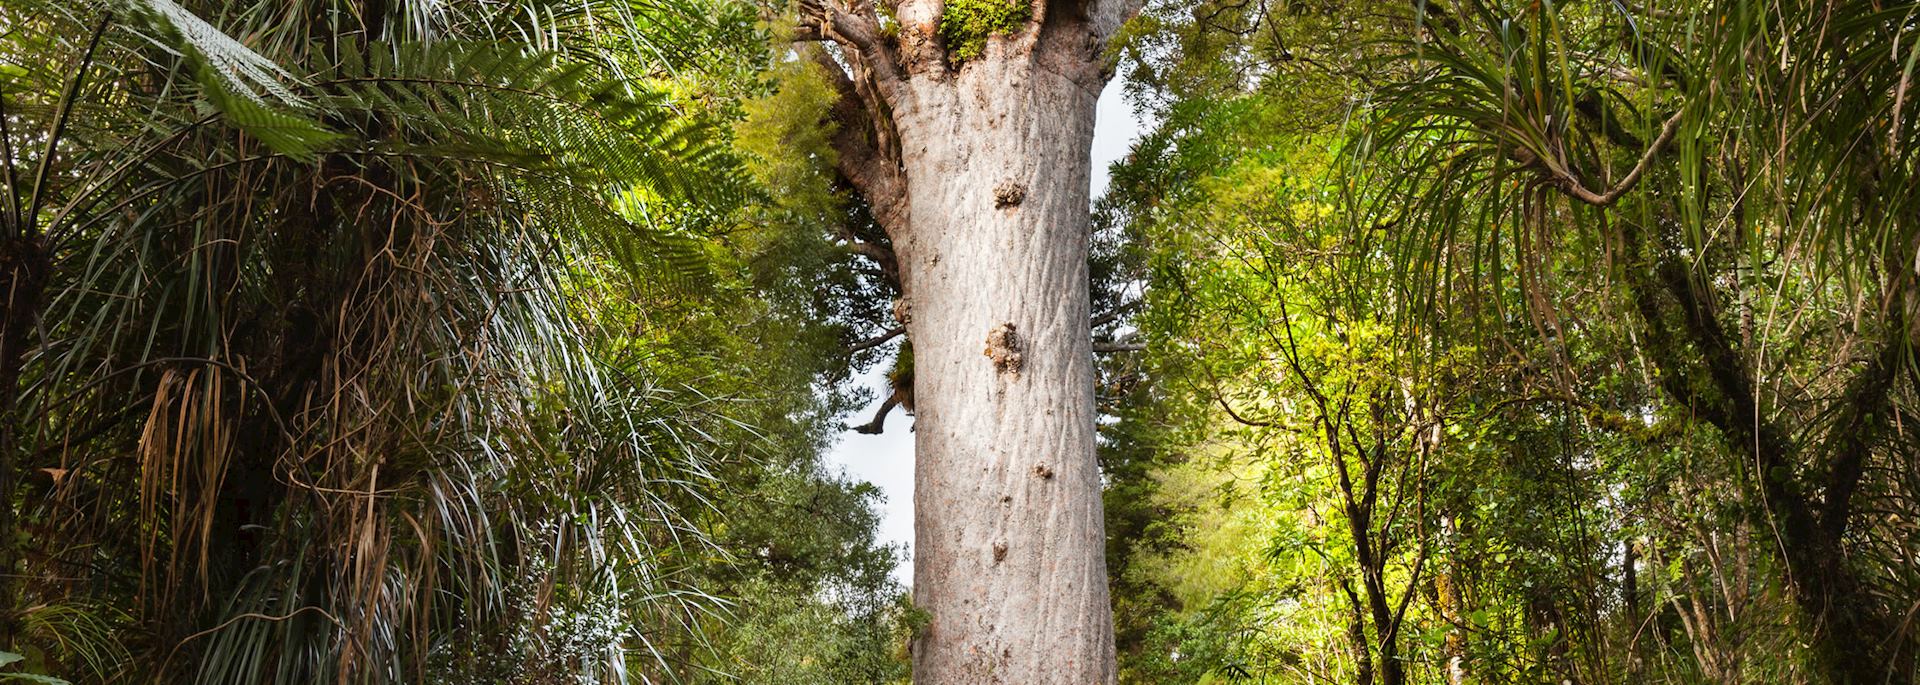 Kauri tree, Waipoua Forest